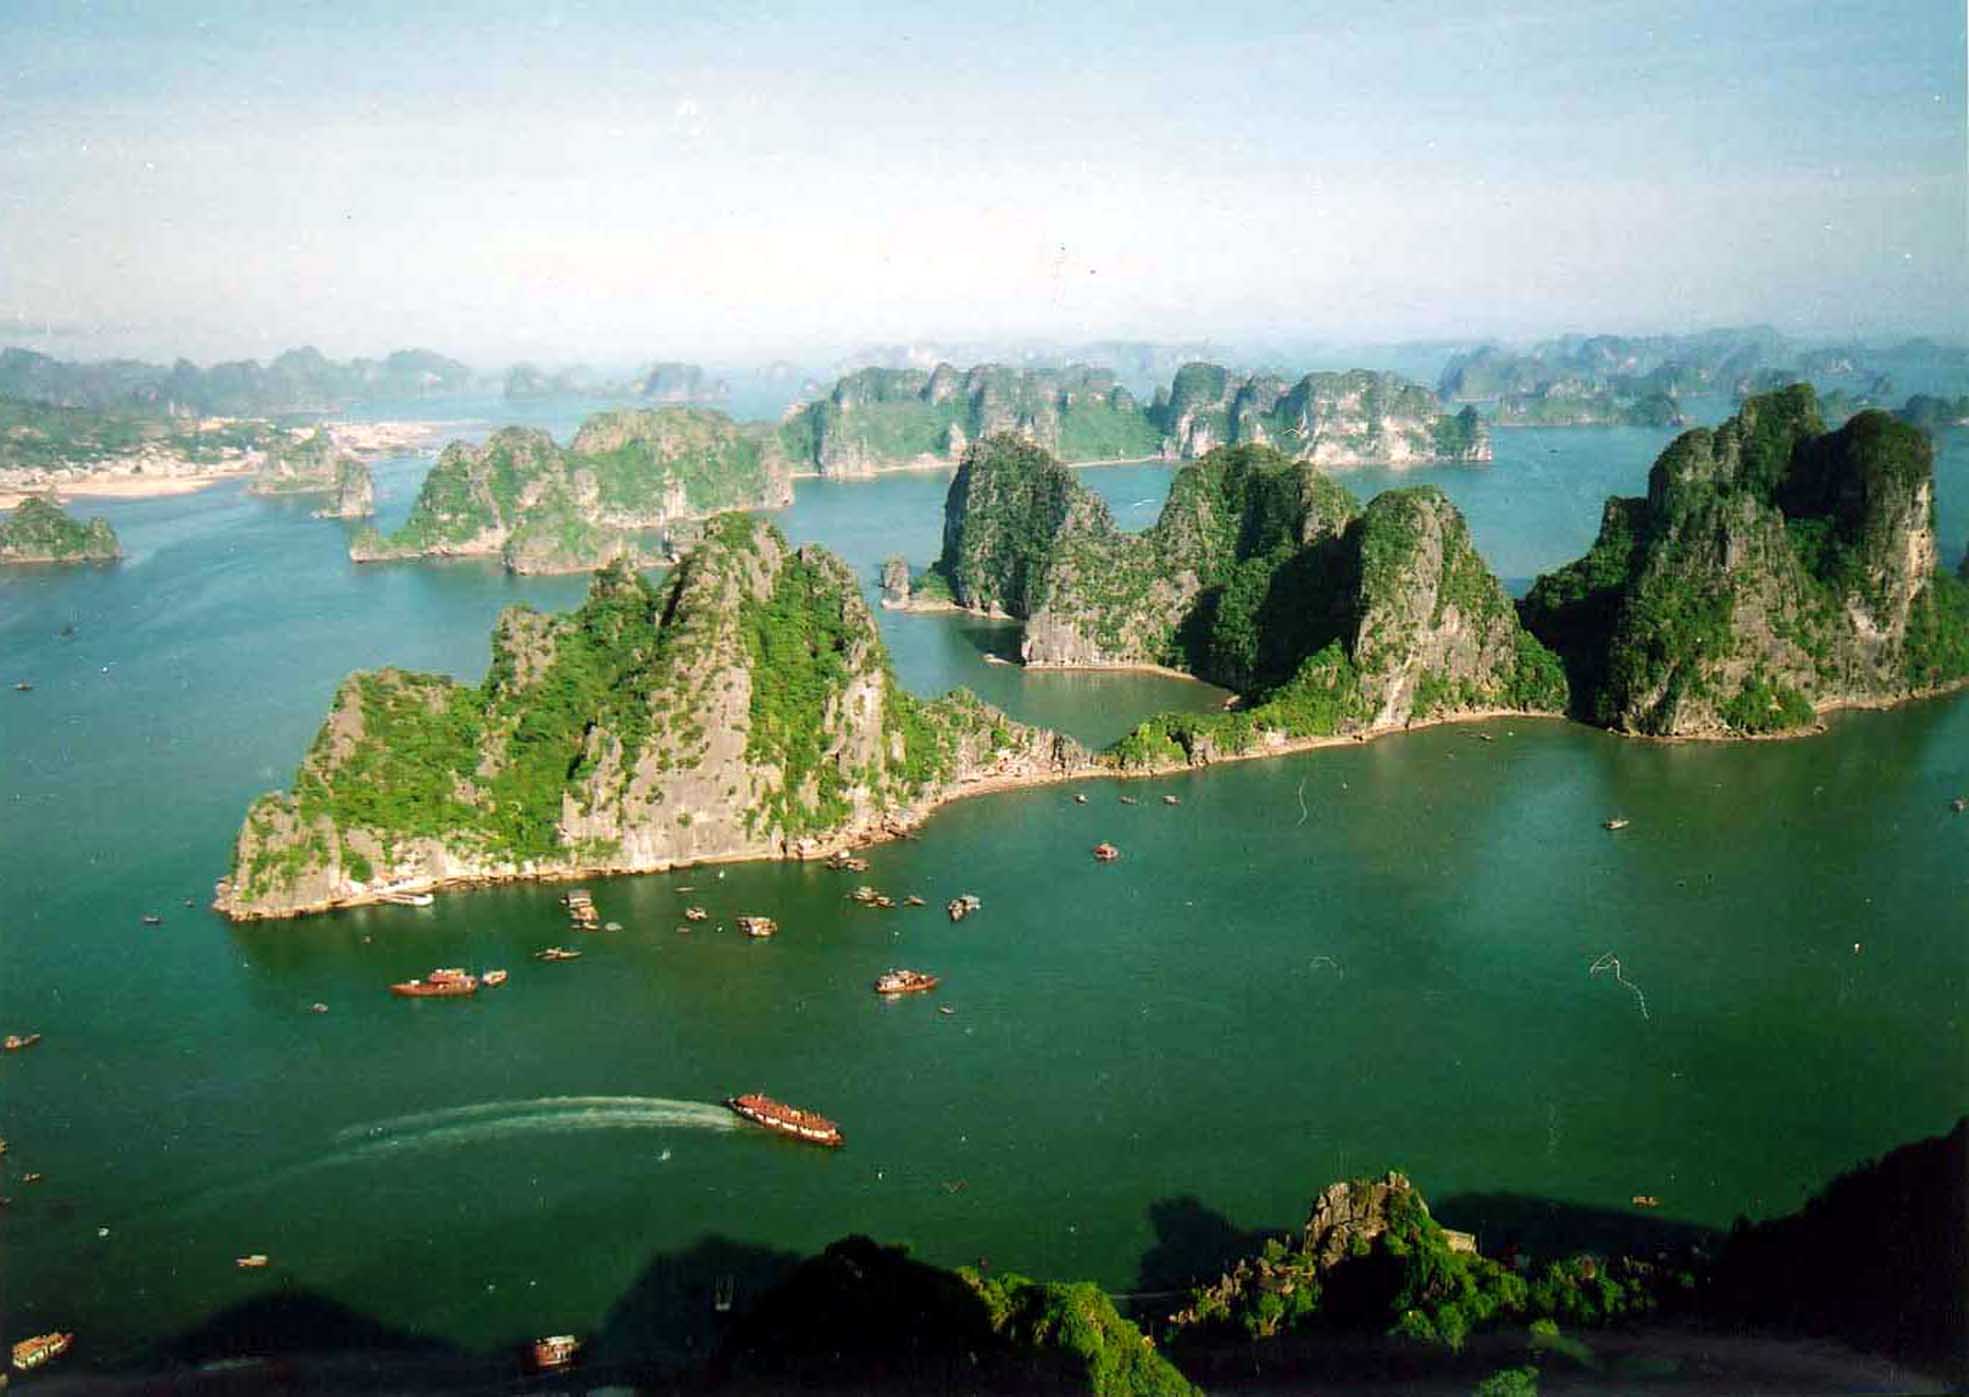 Nếu bạn muốn khám phá vẻ đẹp đích thực của Việt Nam, hãy đến với Quảng Ninh. Đây là nơi có vịnh Hạ Long với hàng núi đá sừng sững, hang động kỳ vĩ và những ngôi làng của cộng đồng ngư dân nổi tiếng. Bên cạnh đó, bạn cũng sẽ được thưởng thức những món ăn đặc sản ngon lành của vùng đất này.